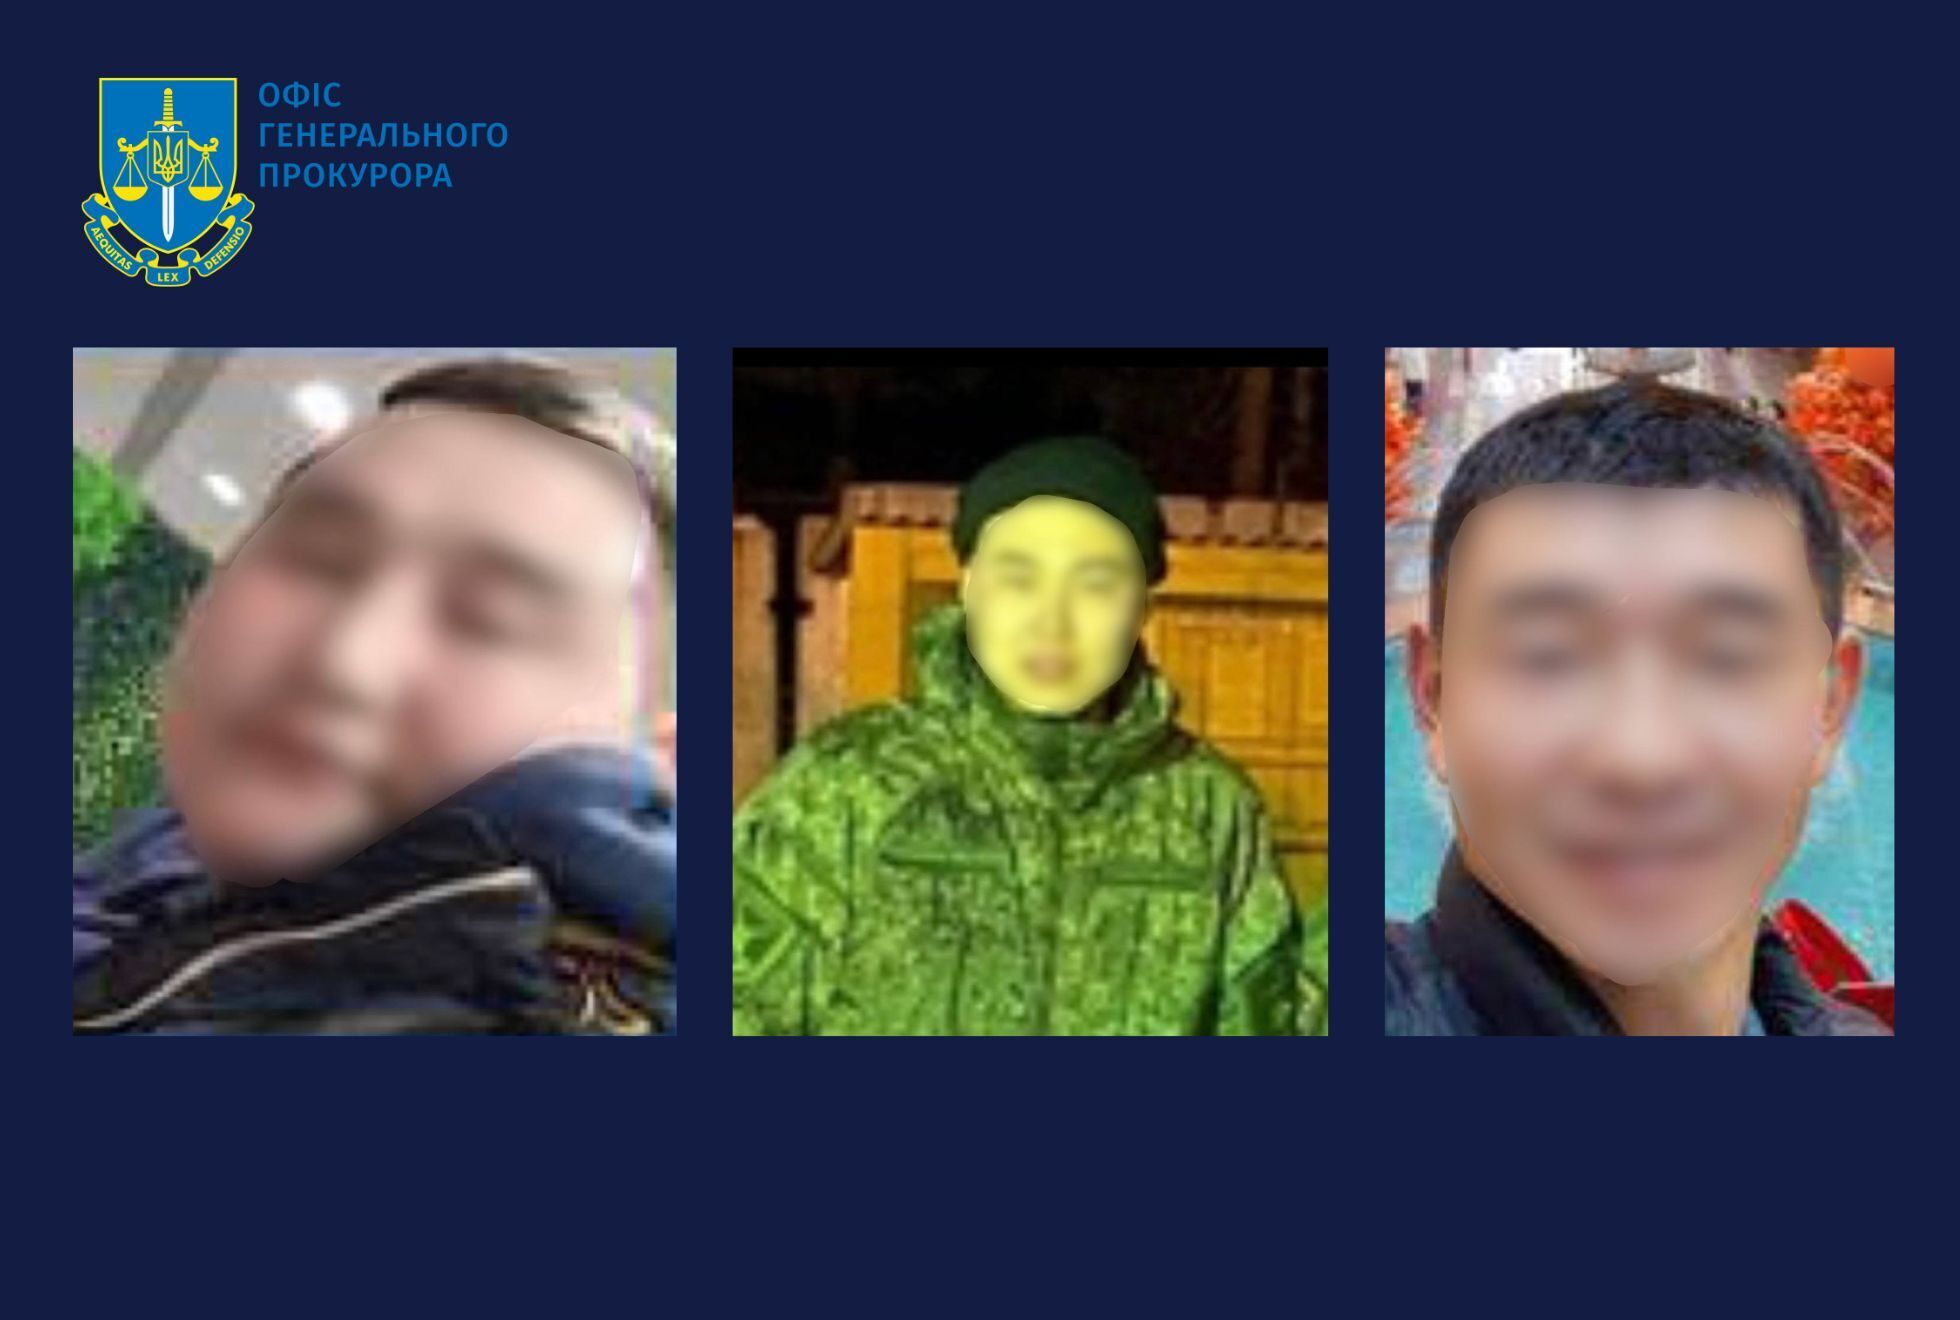 Правоохранители установили личности трех оккупантов, которые насиловали женщину в Киевской области. Фото